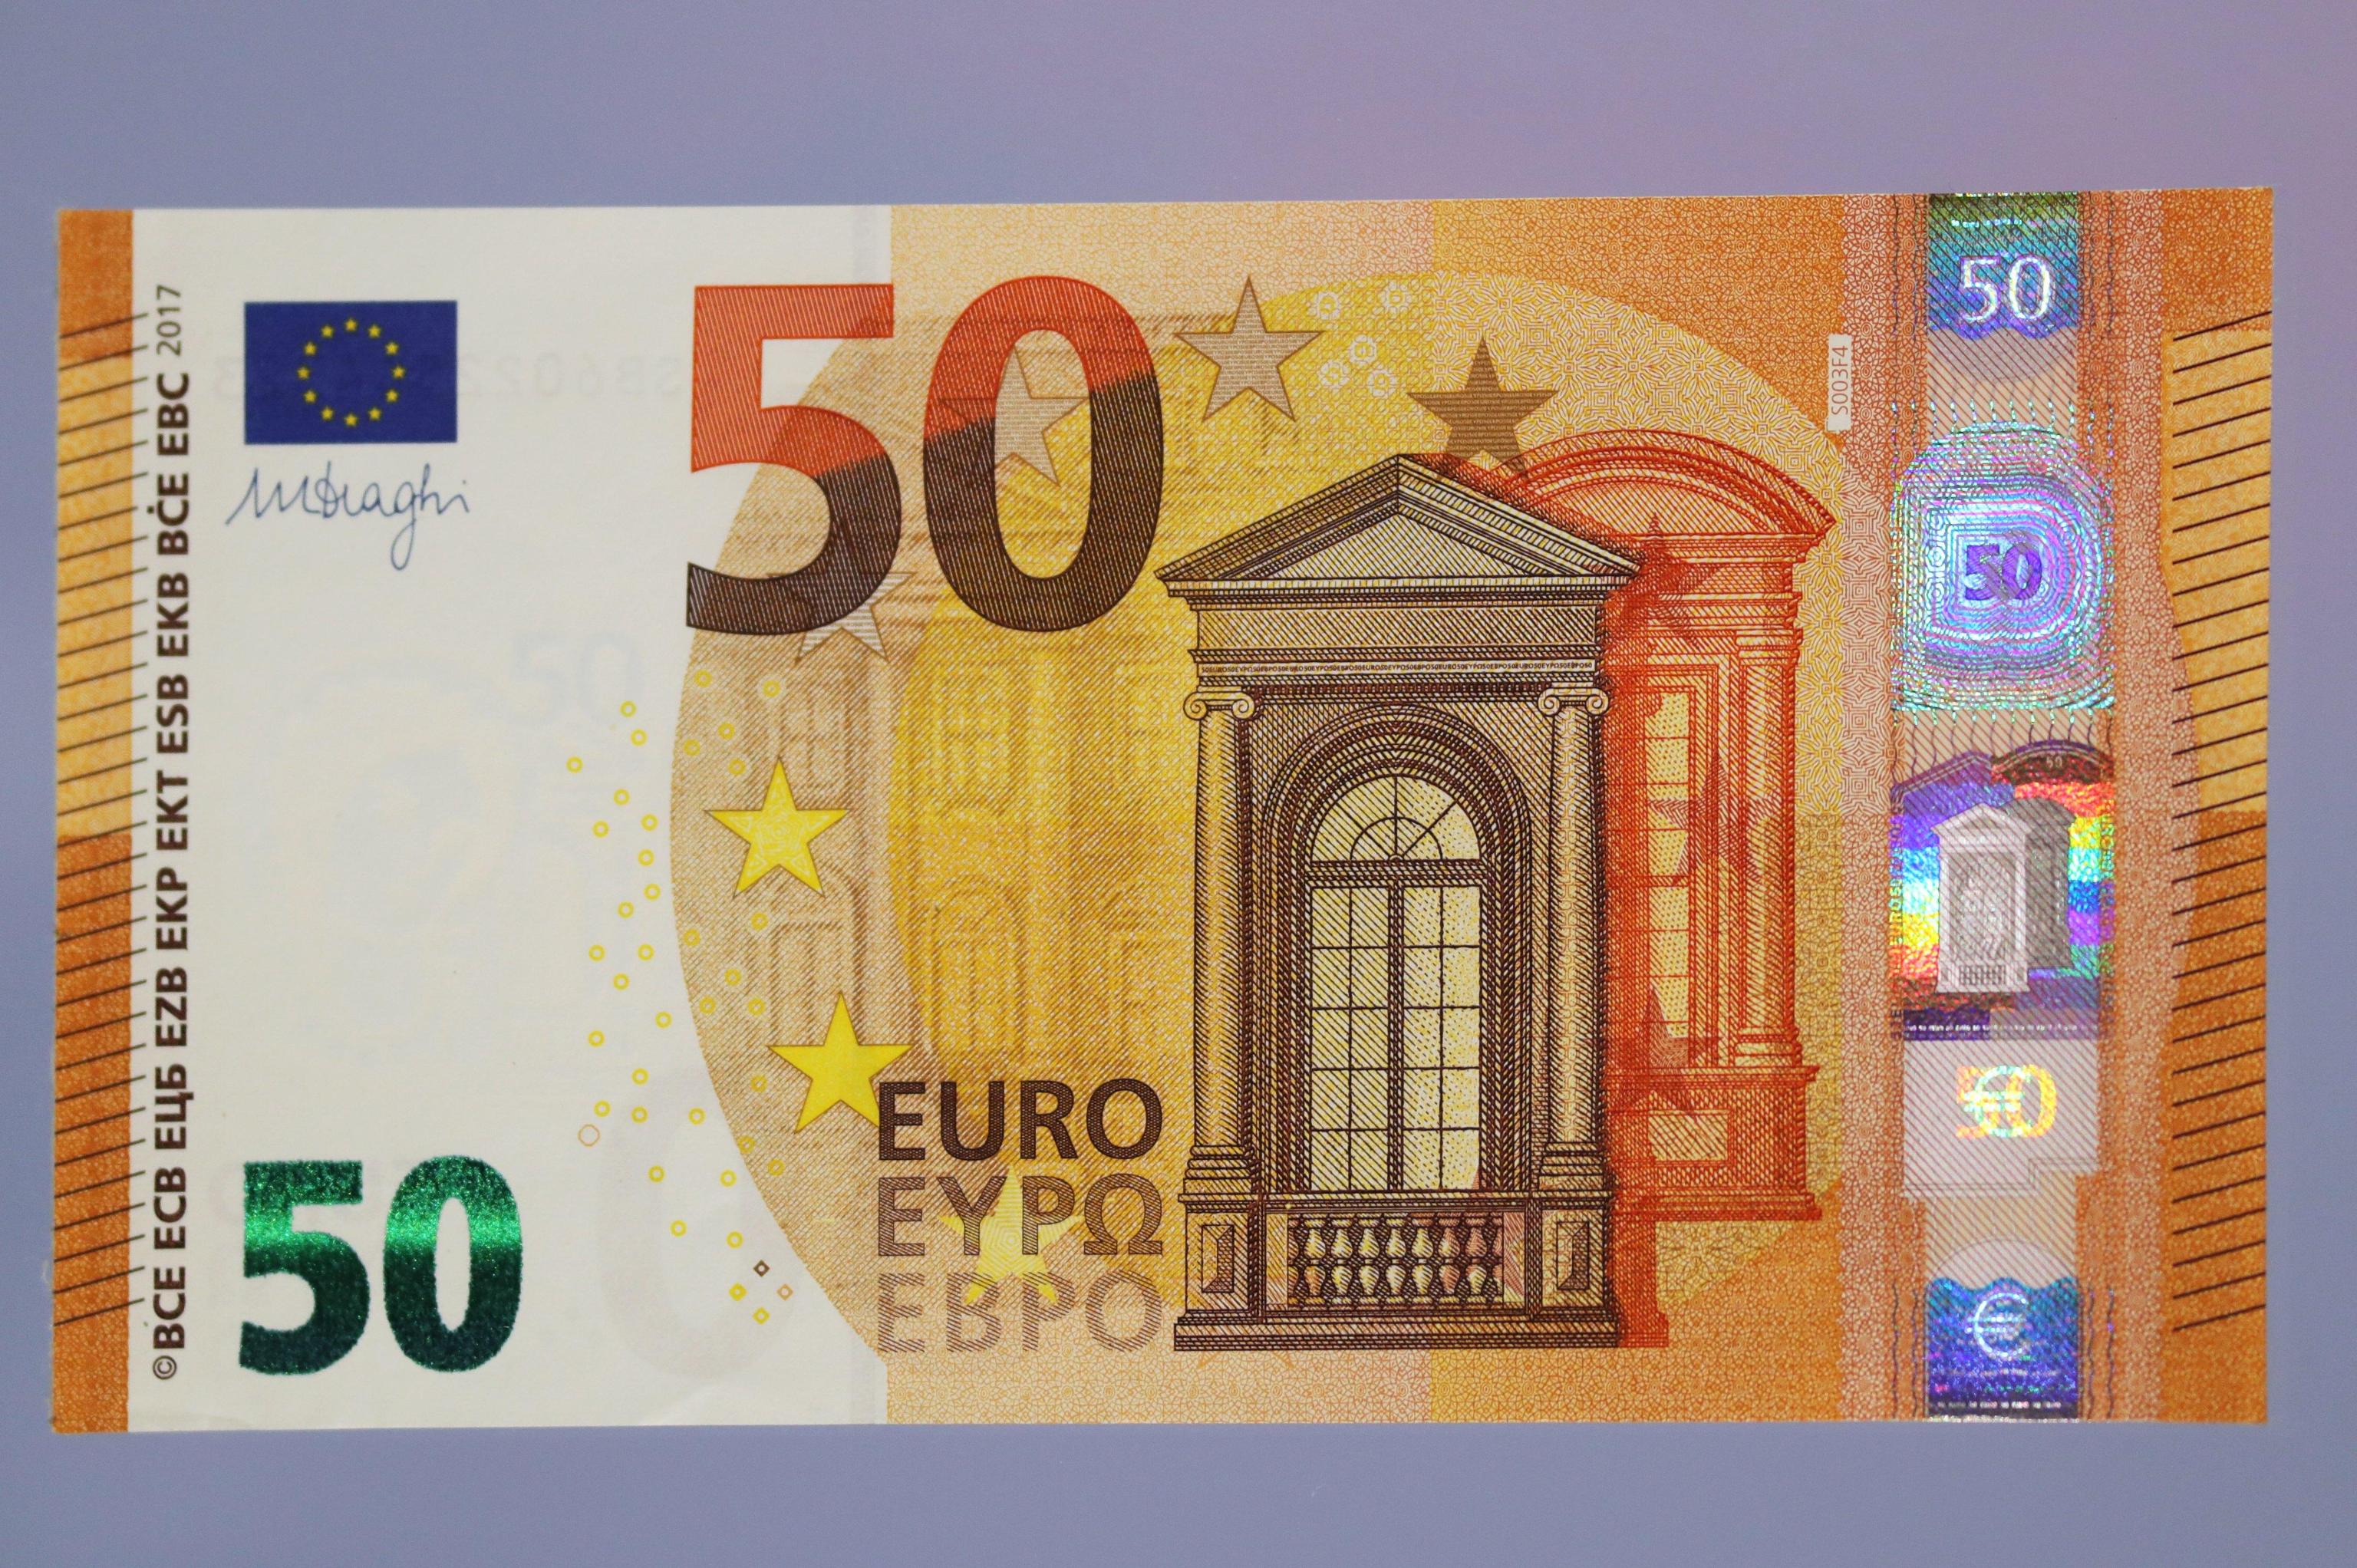 Образцы евро купюр. Банкноты 50 евро. 50 Евро купюра. Банкнота 50 евро нового образца. Как выглядит банкнота 50 евро.